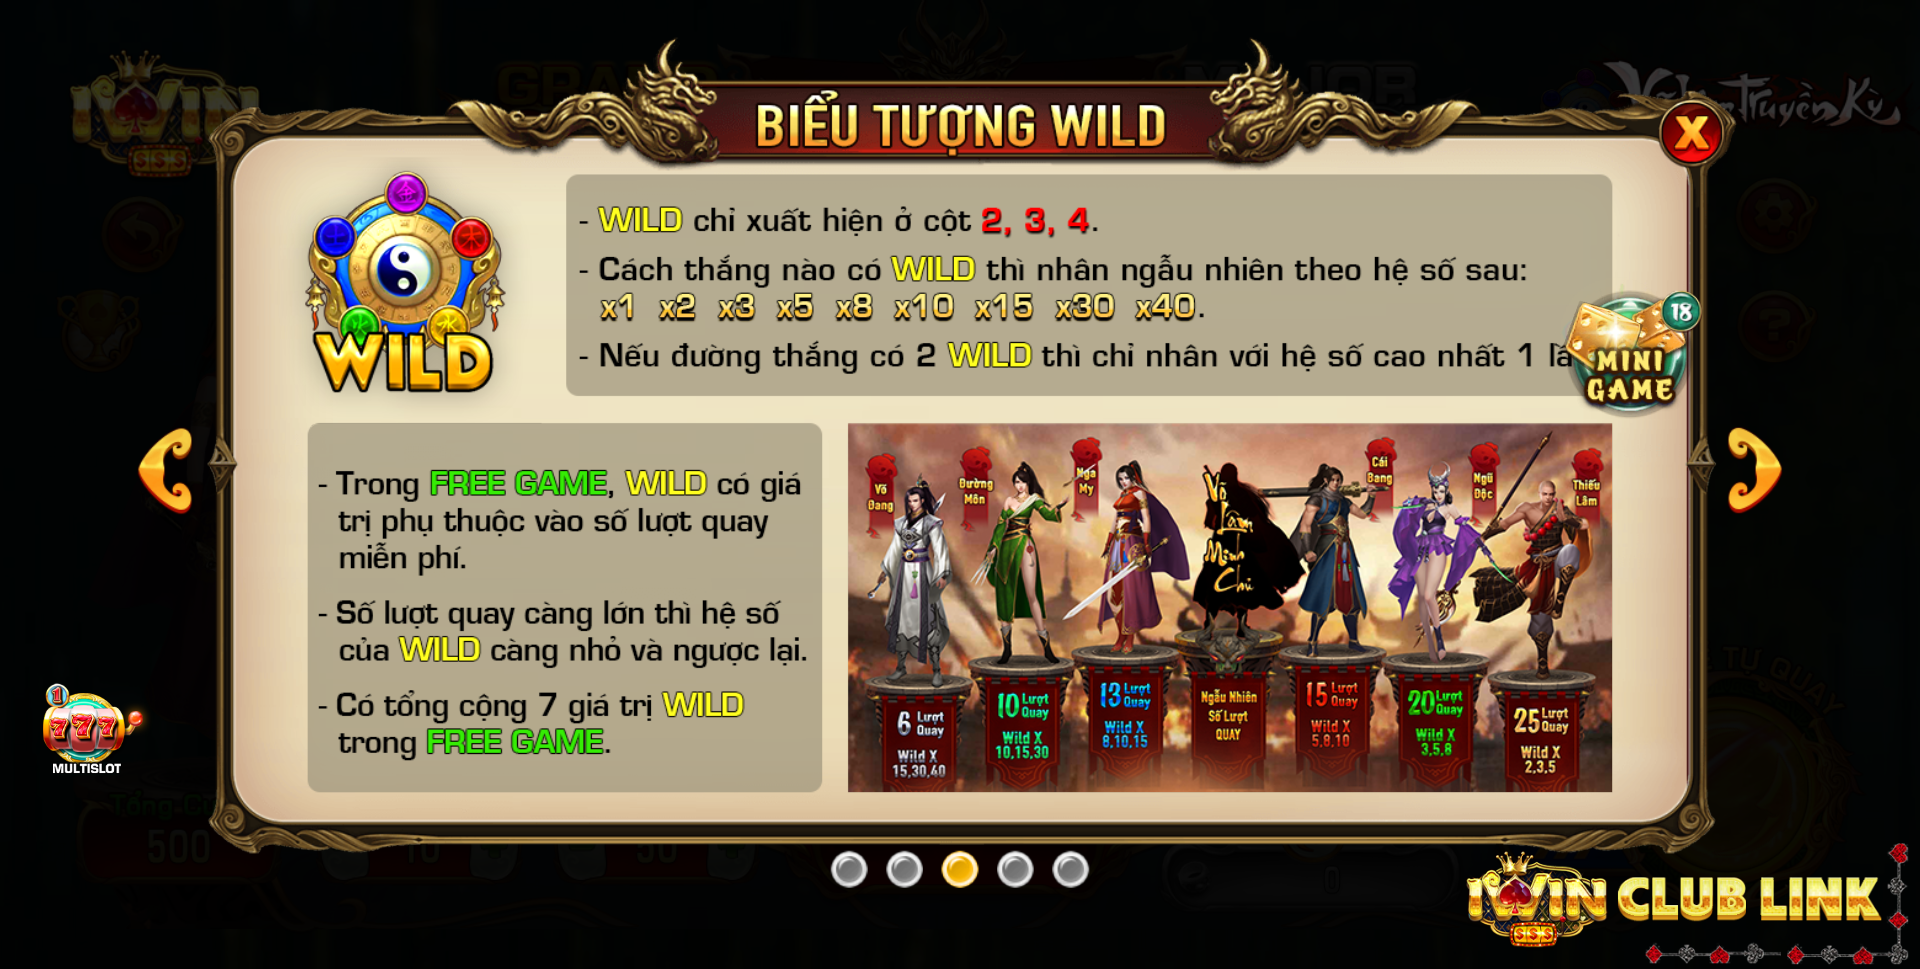 biểu tượng wild slot game võ lâm truyền kỳ iwin club